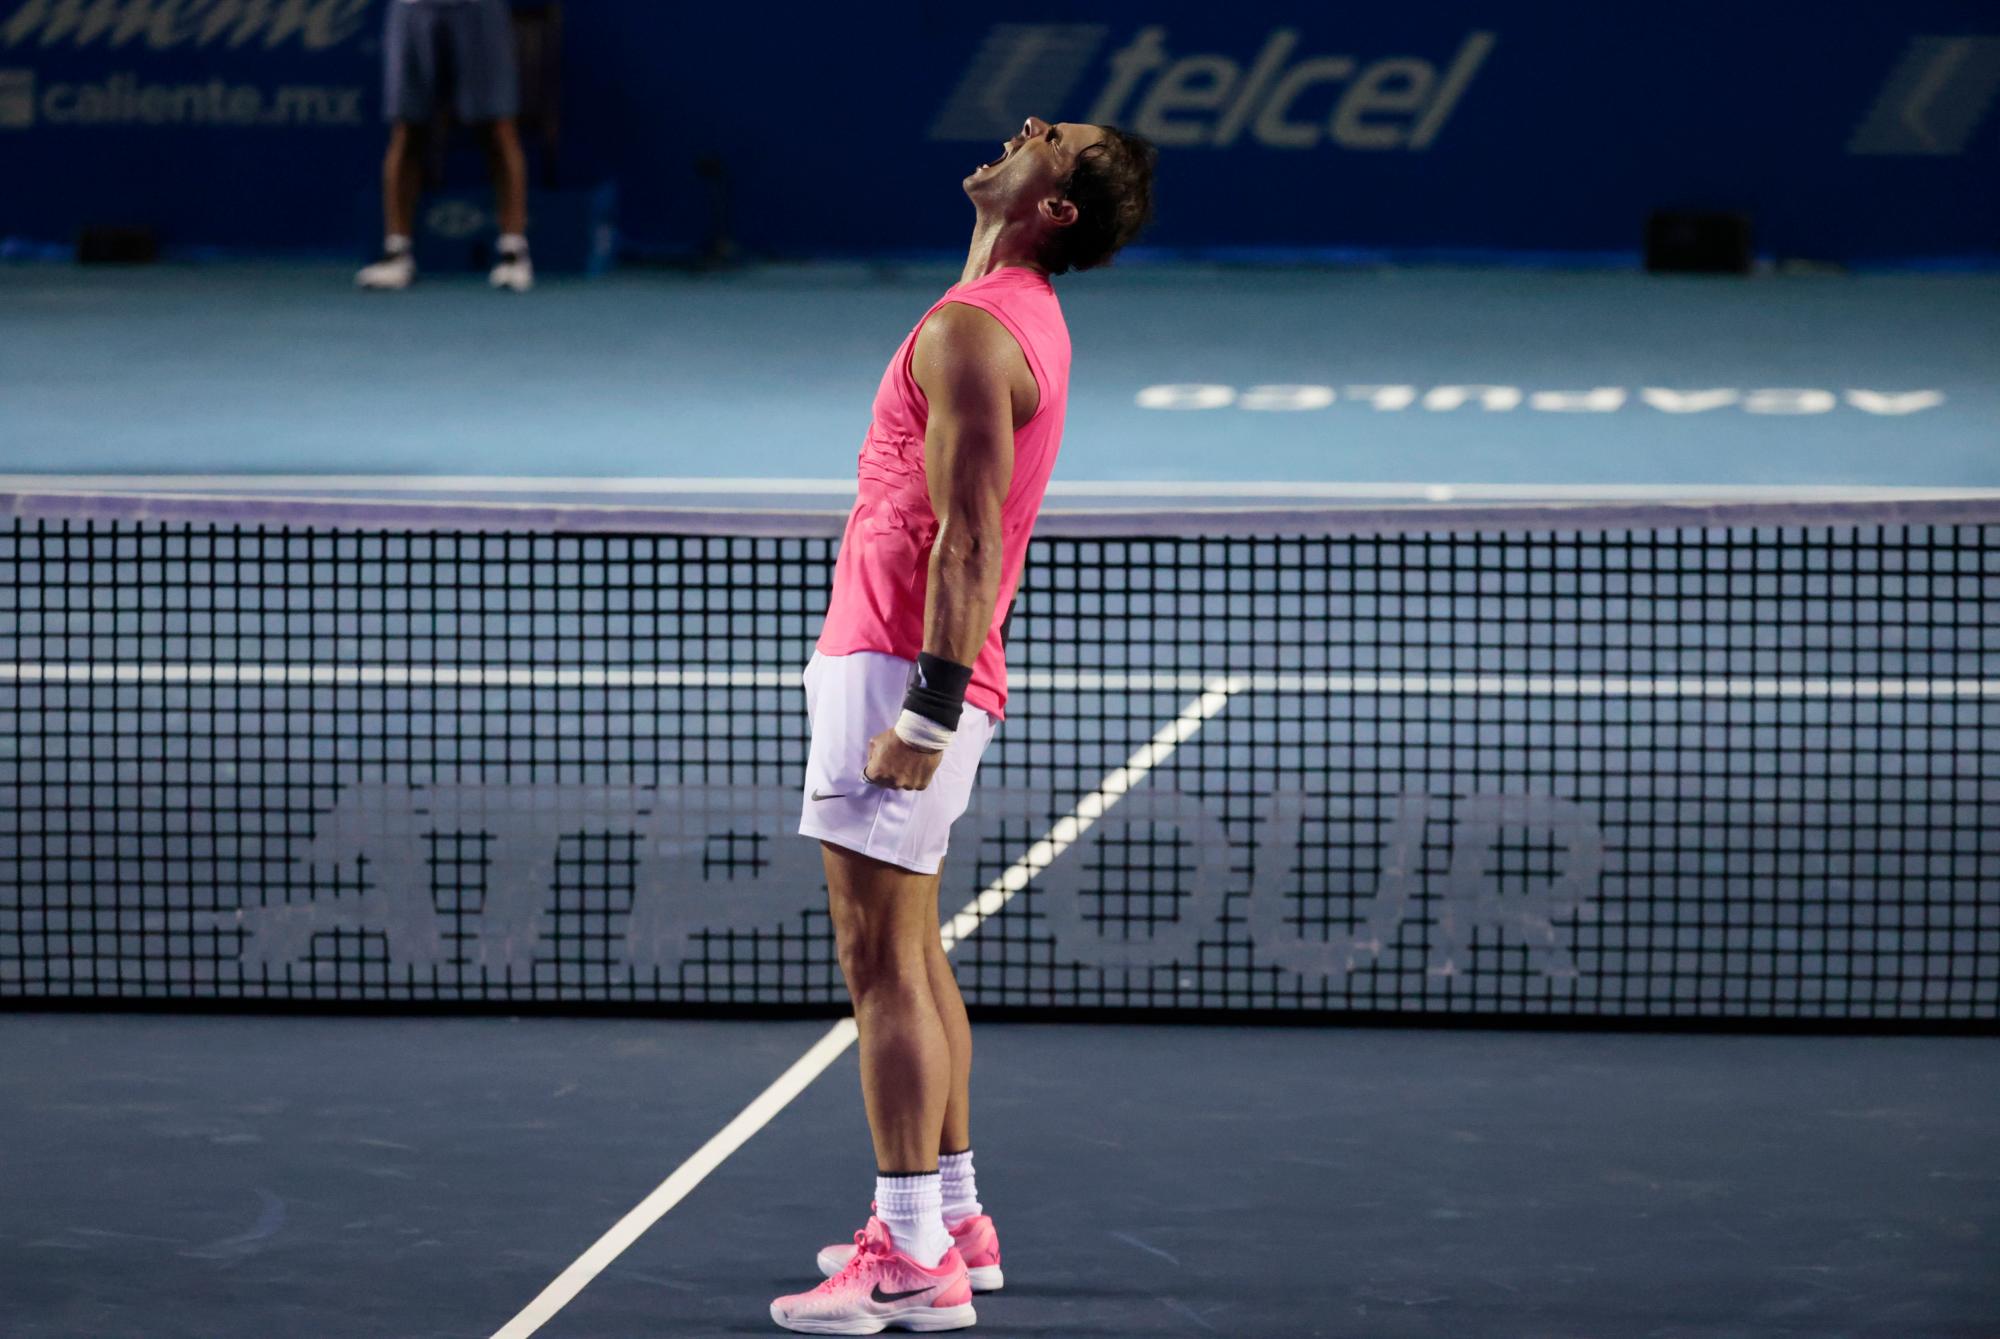 En esta imagen, tomada el 28 de febrero de 2020, el tenista español Rafael Nadal grita al celebrar su victoria sobre el búlgaro Grigor Dimitrov en semifinales del Abierto Mexicano, en Acapulco, México. 